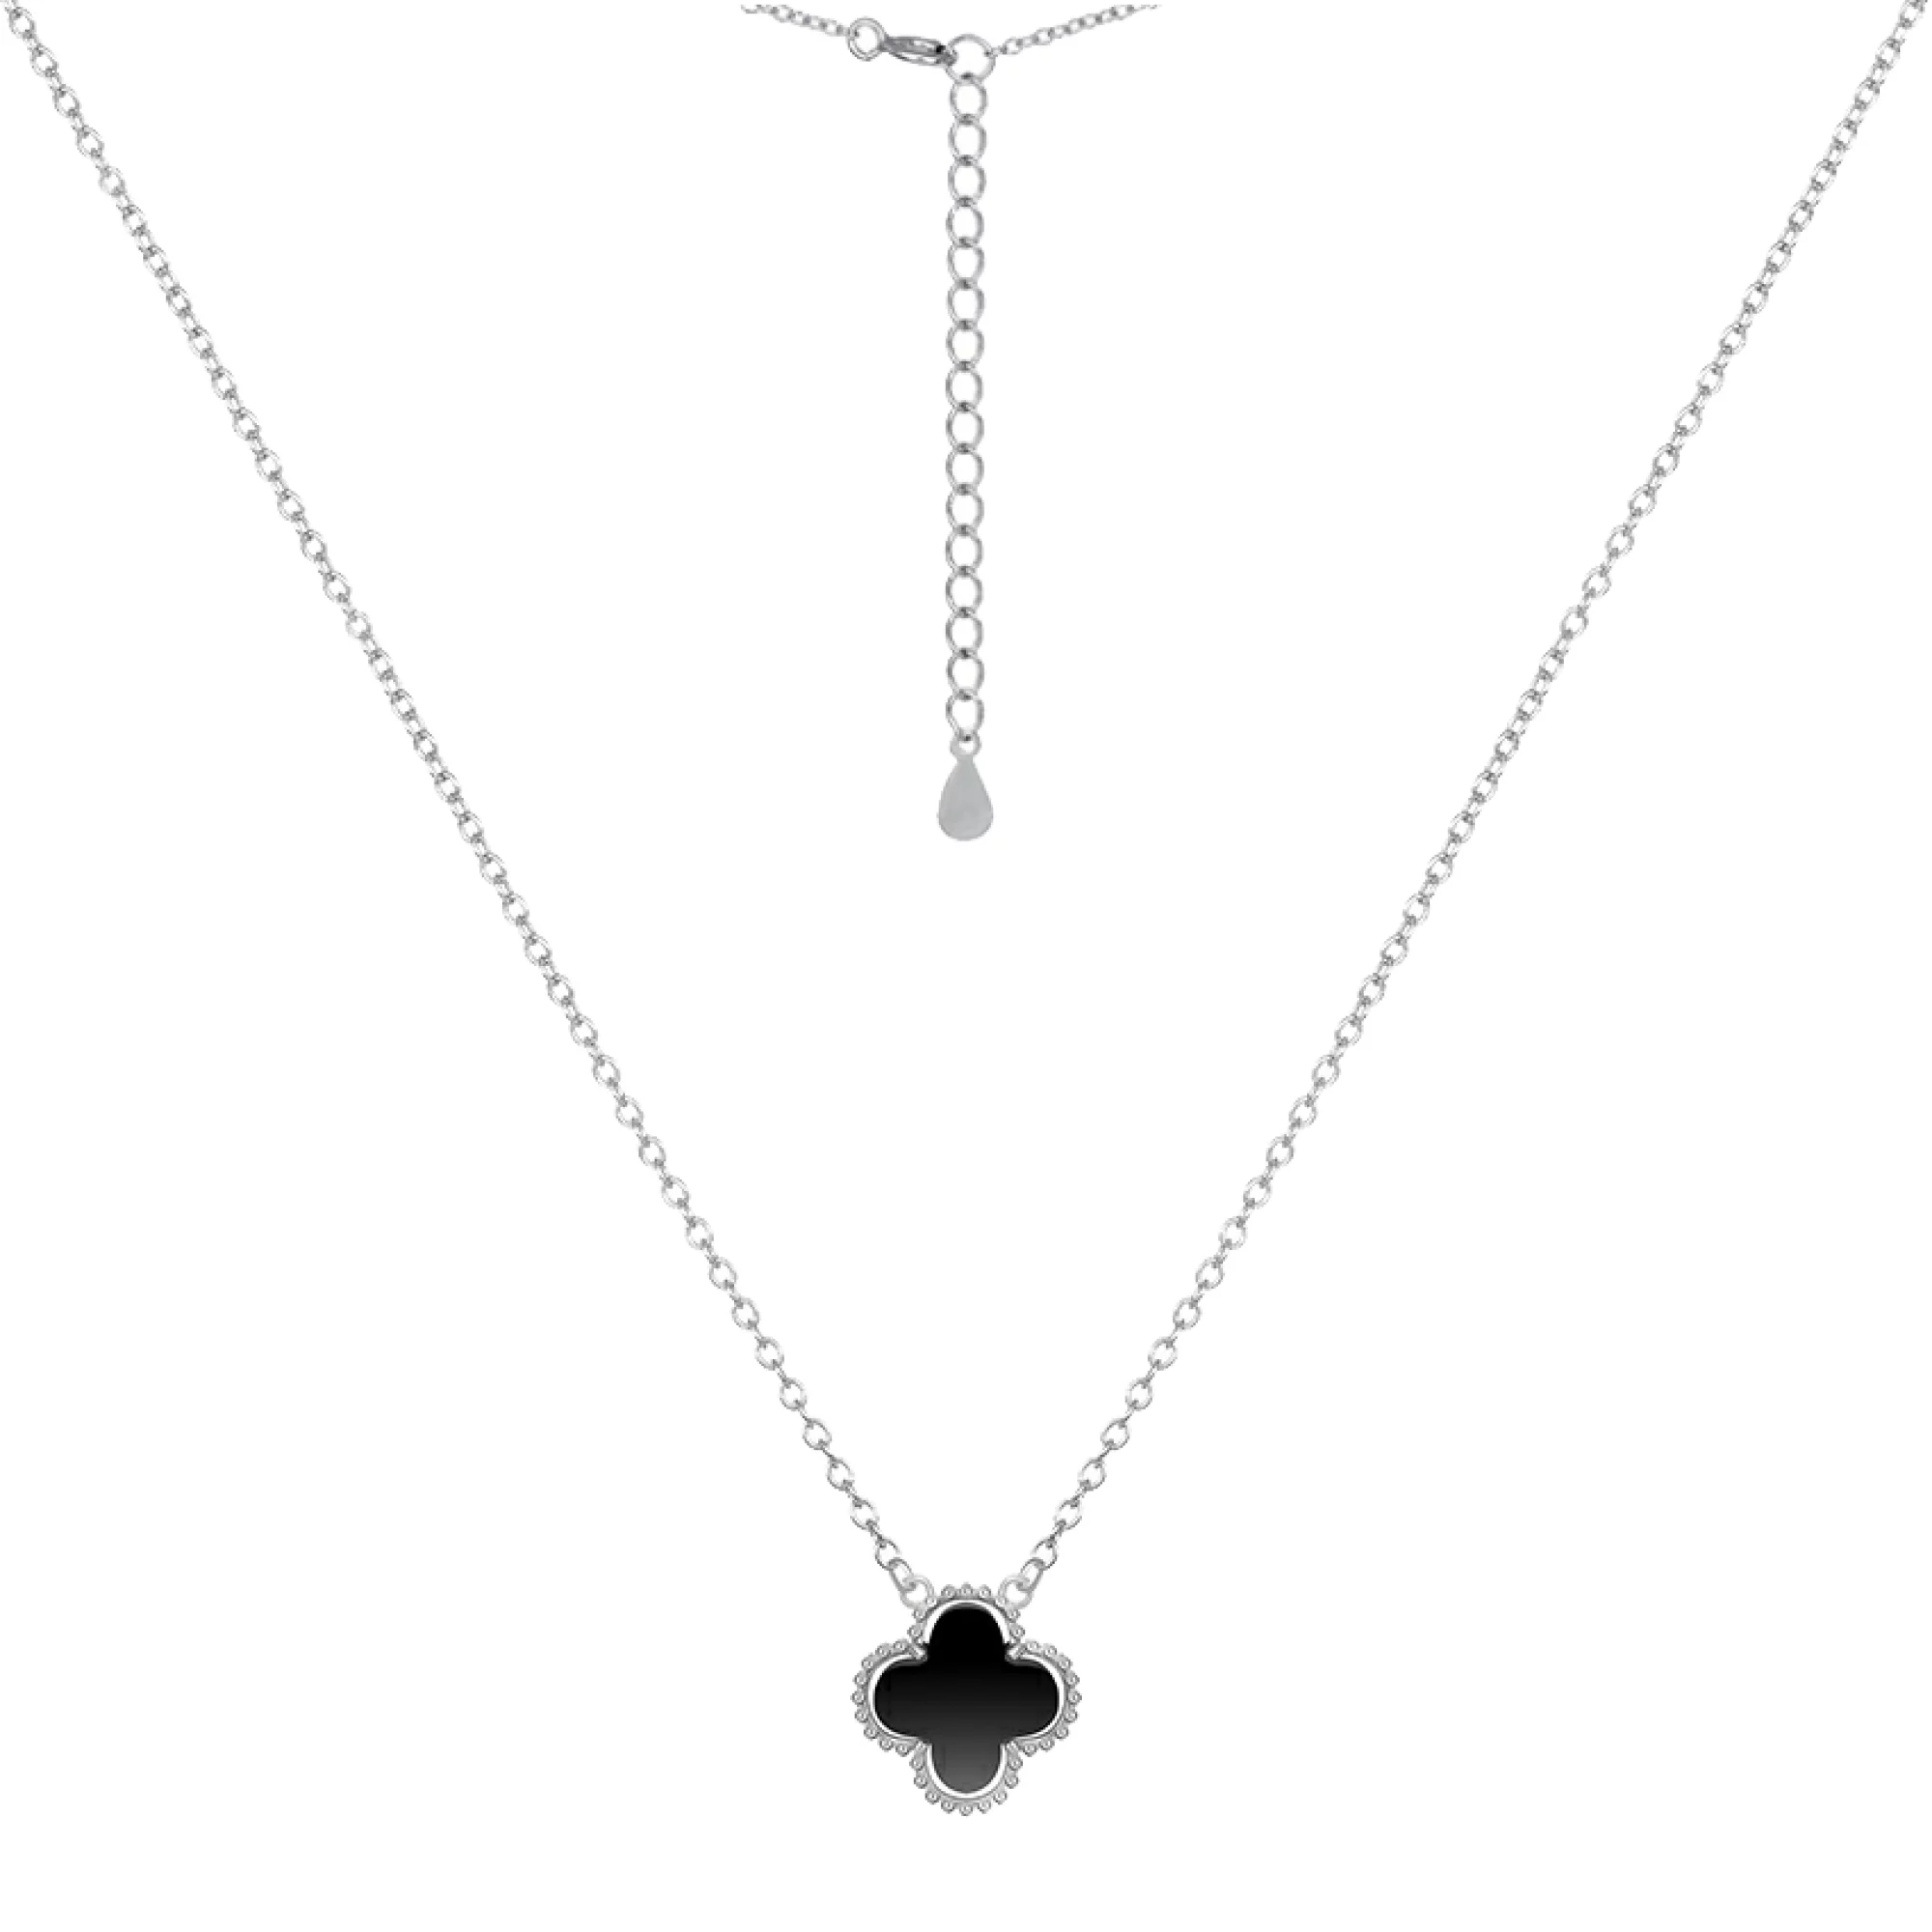 Колье серебряное с ониксом Клевер в Якорном плетении - 973438 – изображение 1